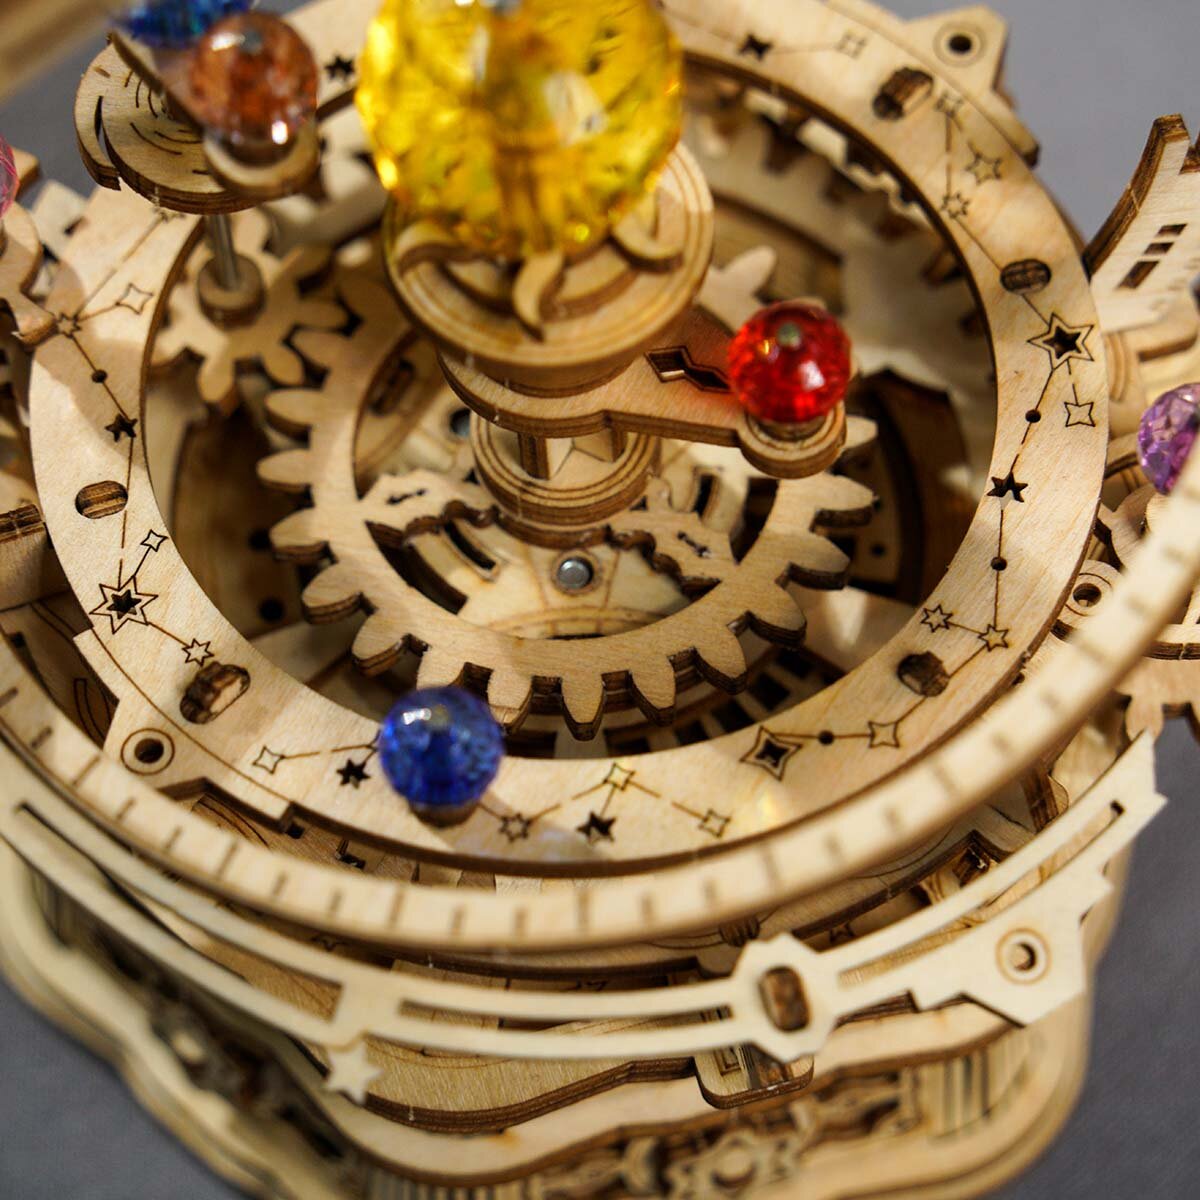 Puzzle Mécanique 3D Bois - Boîte à musique - Carrousel romantique - ROKR